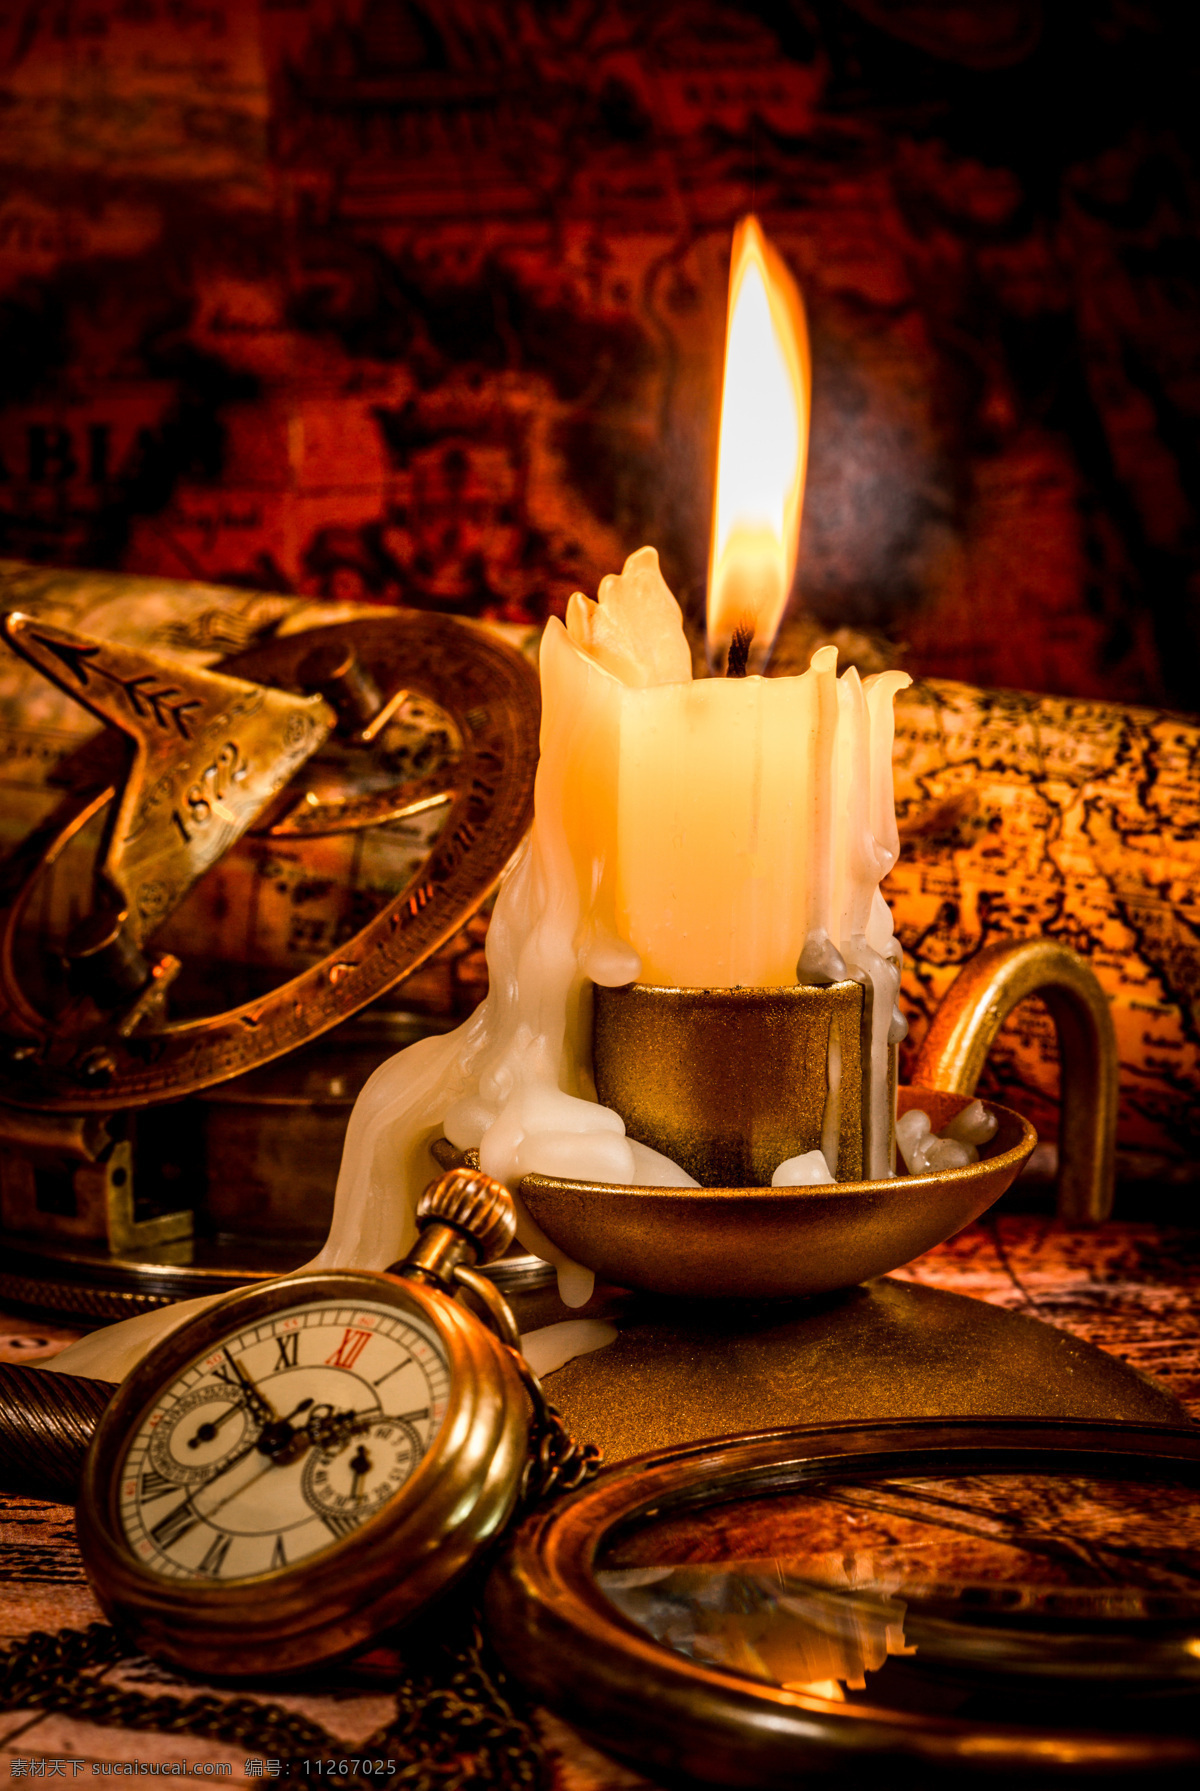 神秘 探险 指南针 宝藏 蜡烛 航海图 藏宝图 罗盘 复古 复古设计 探险图 传统文化 文化艺术